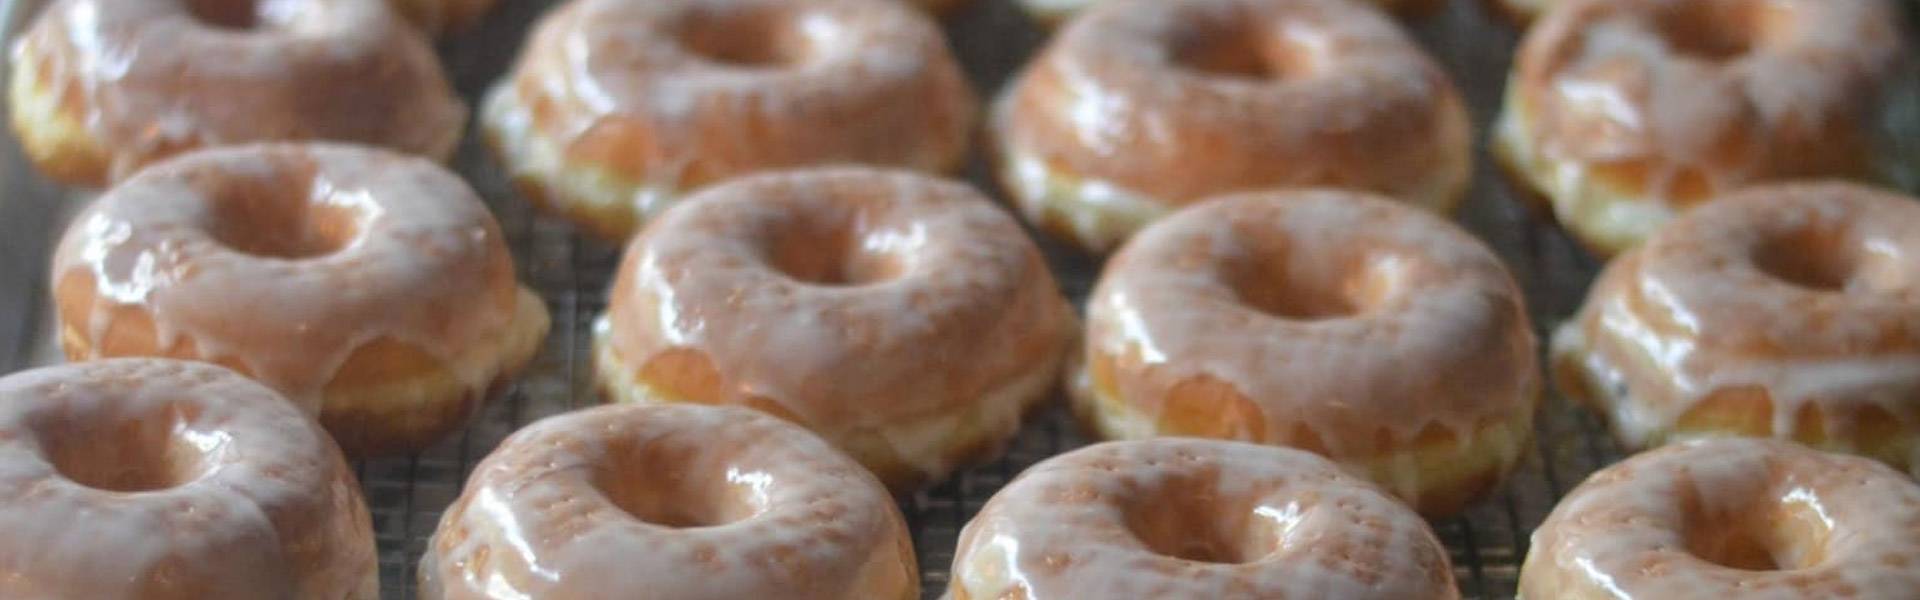 Fresh glazed donuts